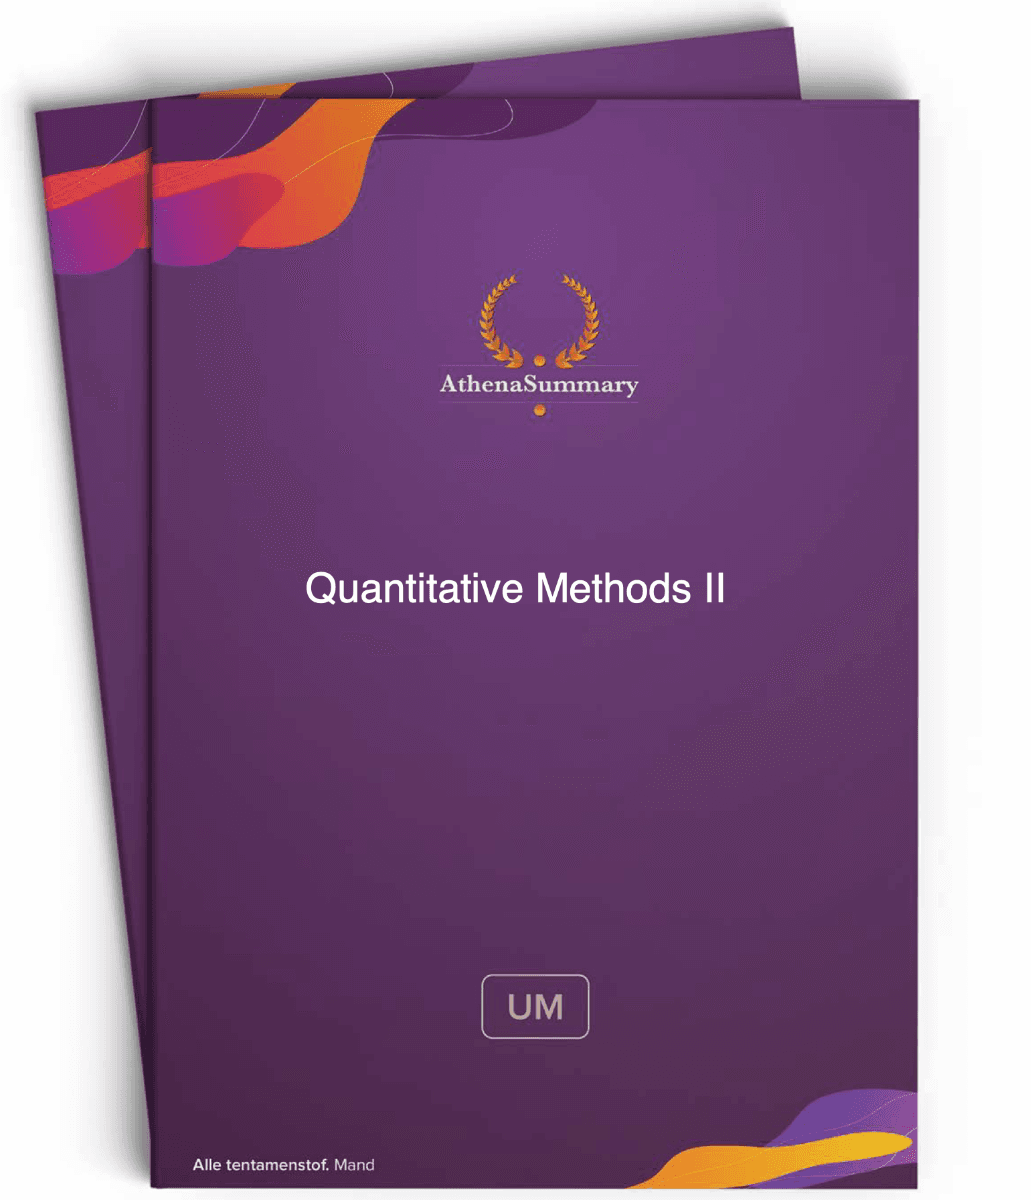 Literature Summary - Quantitative Methods II